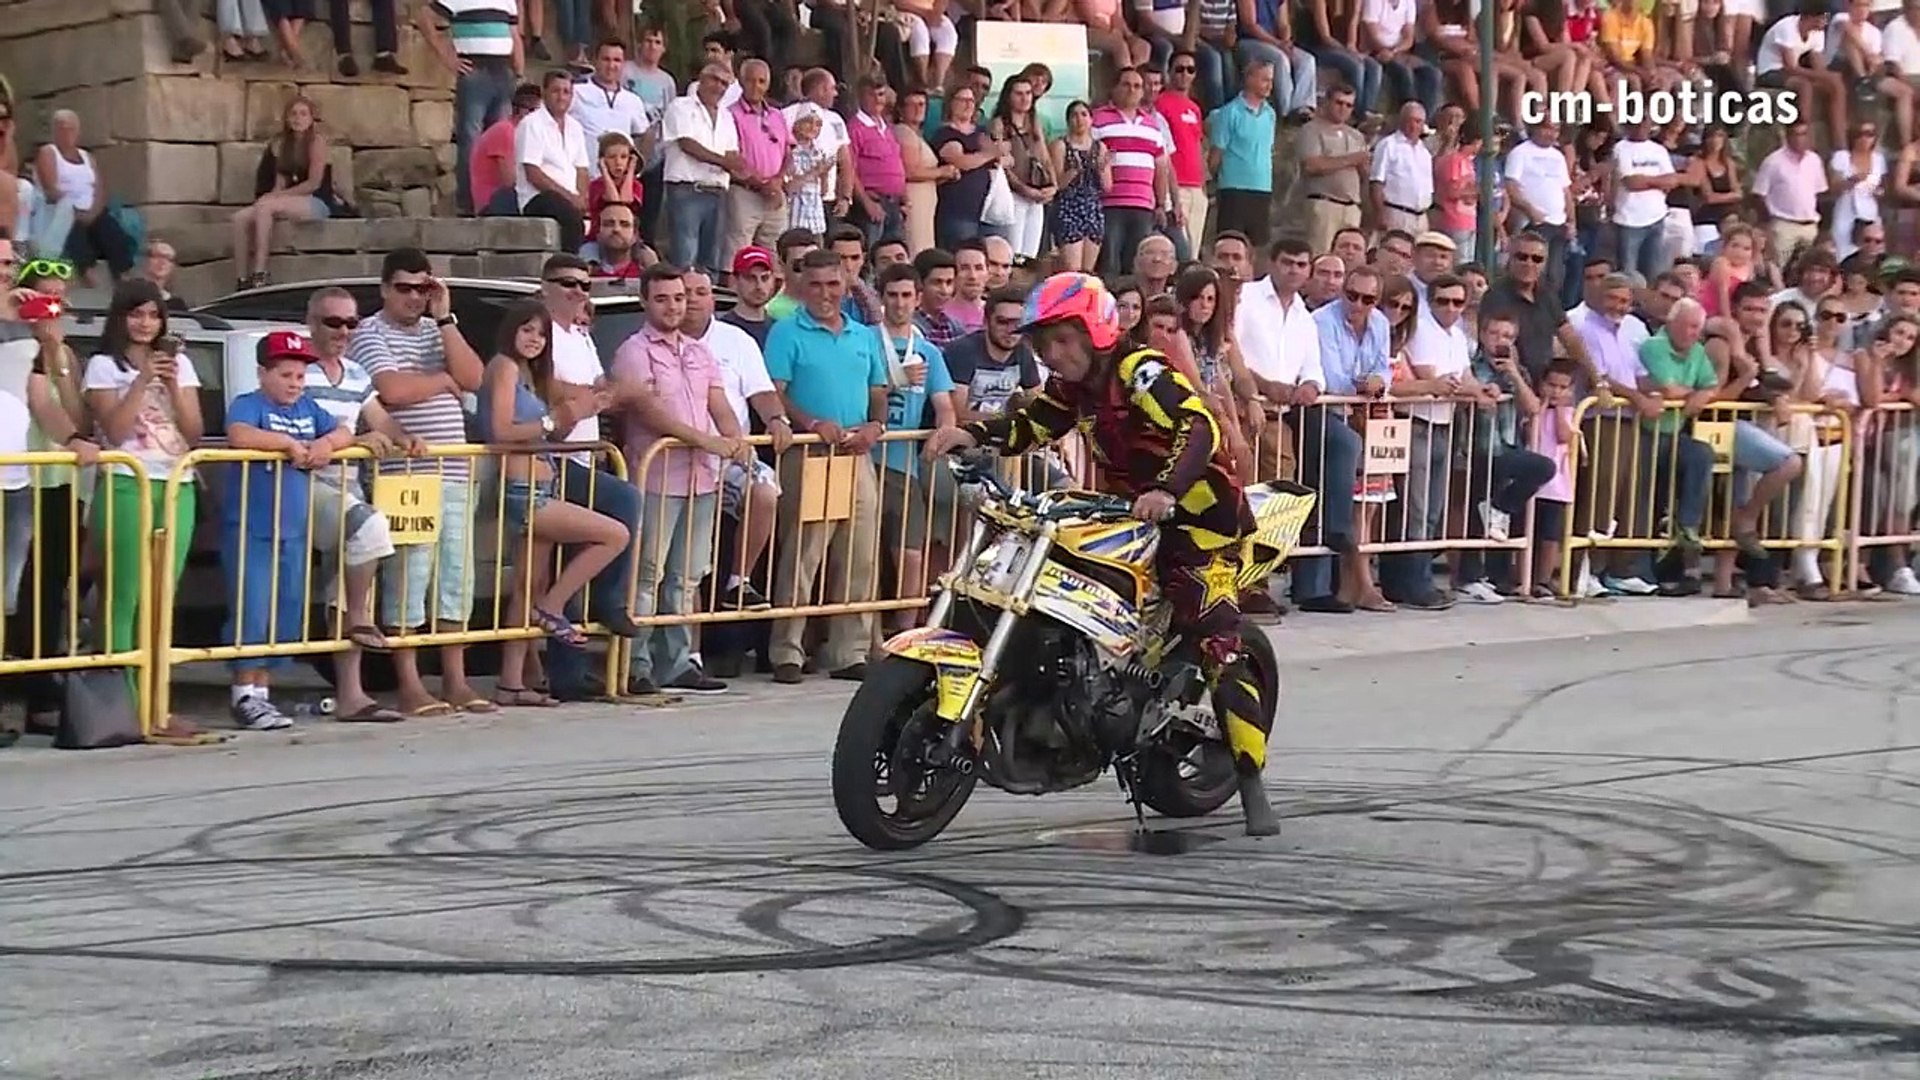 Paulo Martinho | Moto Freestyle | Quemando Rueda [Burnout] | [ Tire 1000  degree ] | BOTICAS - Dailymotion Video